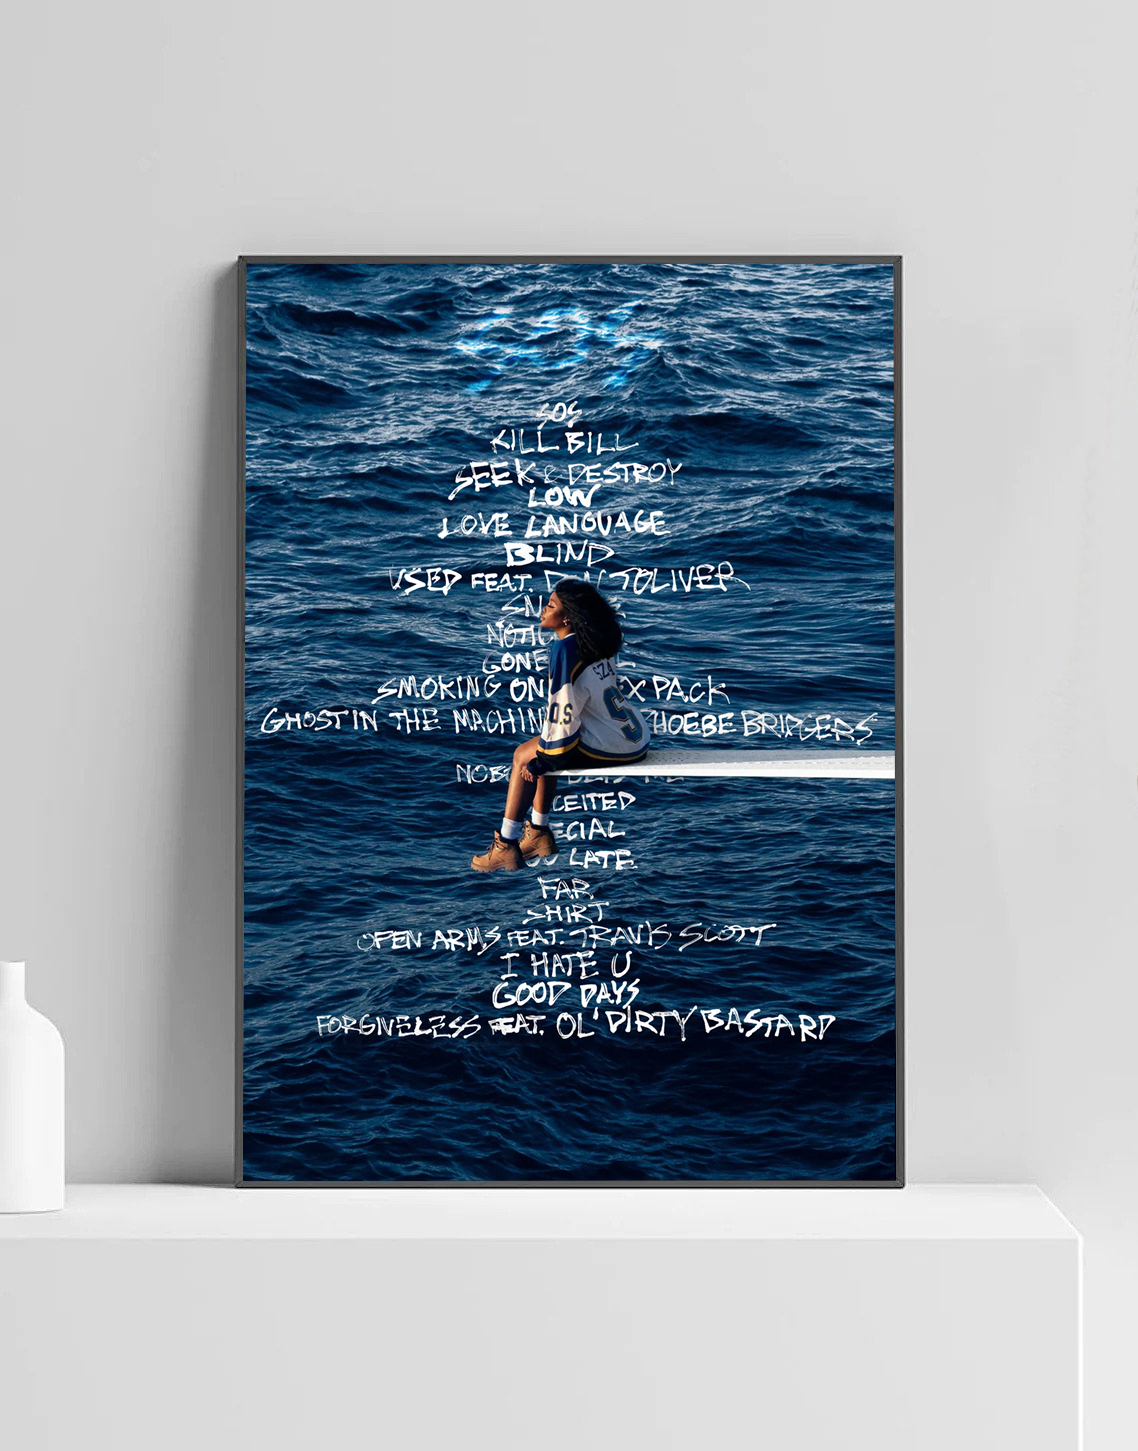 SZA ‘SOS’ Premium Album Music Poster | Cover Artwork and Tracklist